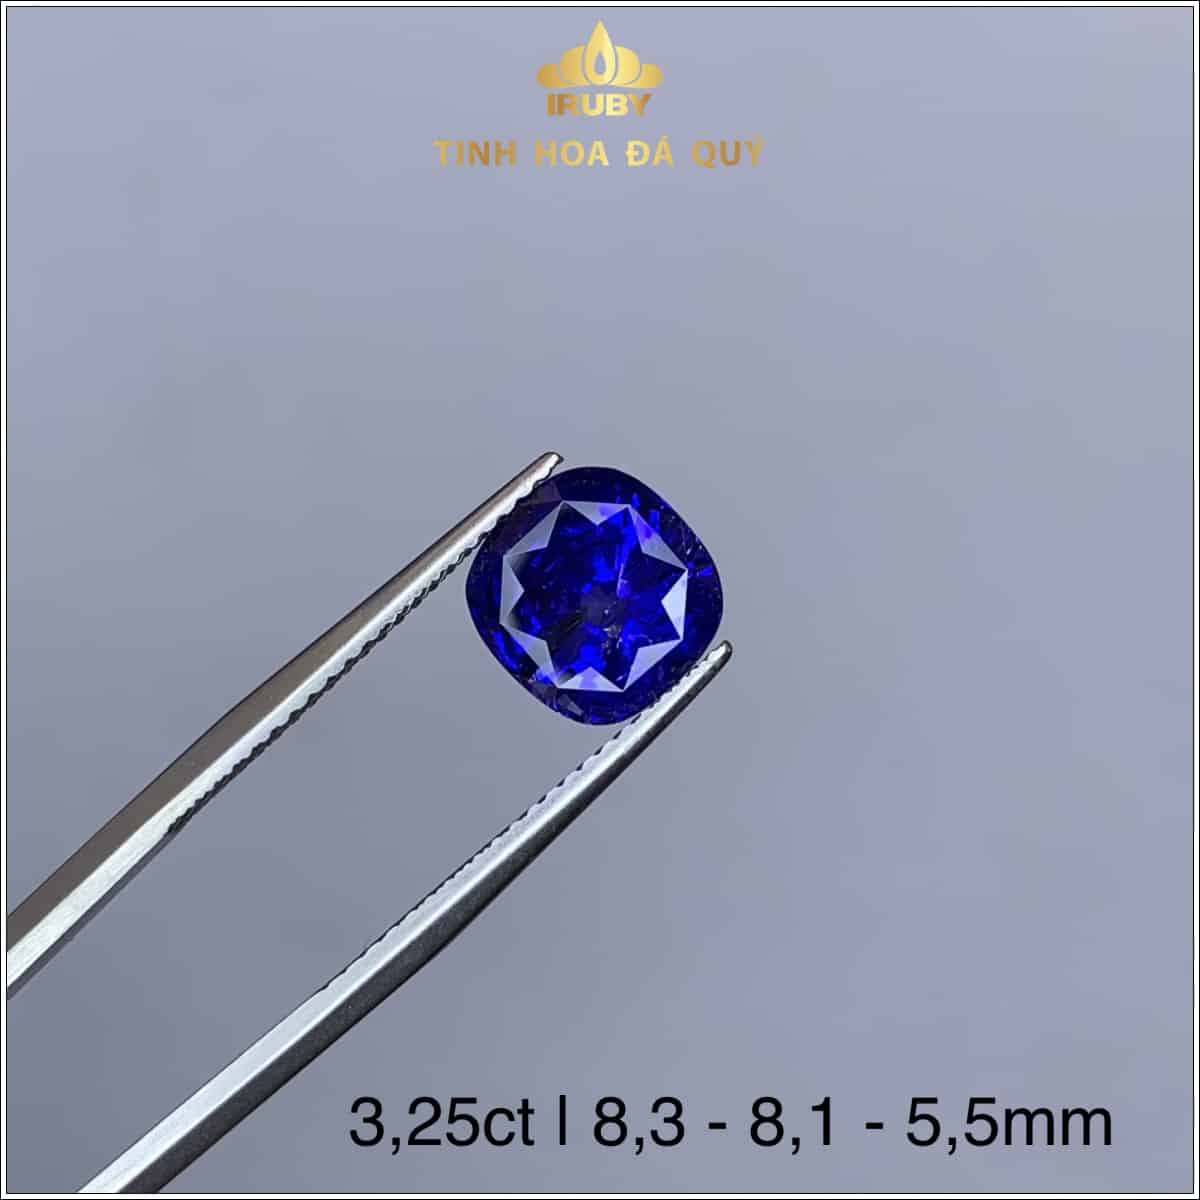 Viên Sapphire màu xanh lam hoàng gia 3,25ct - IRSP 235325 hình ảnh